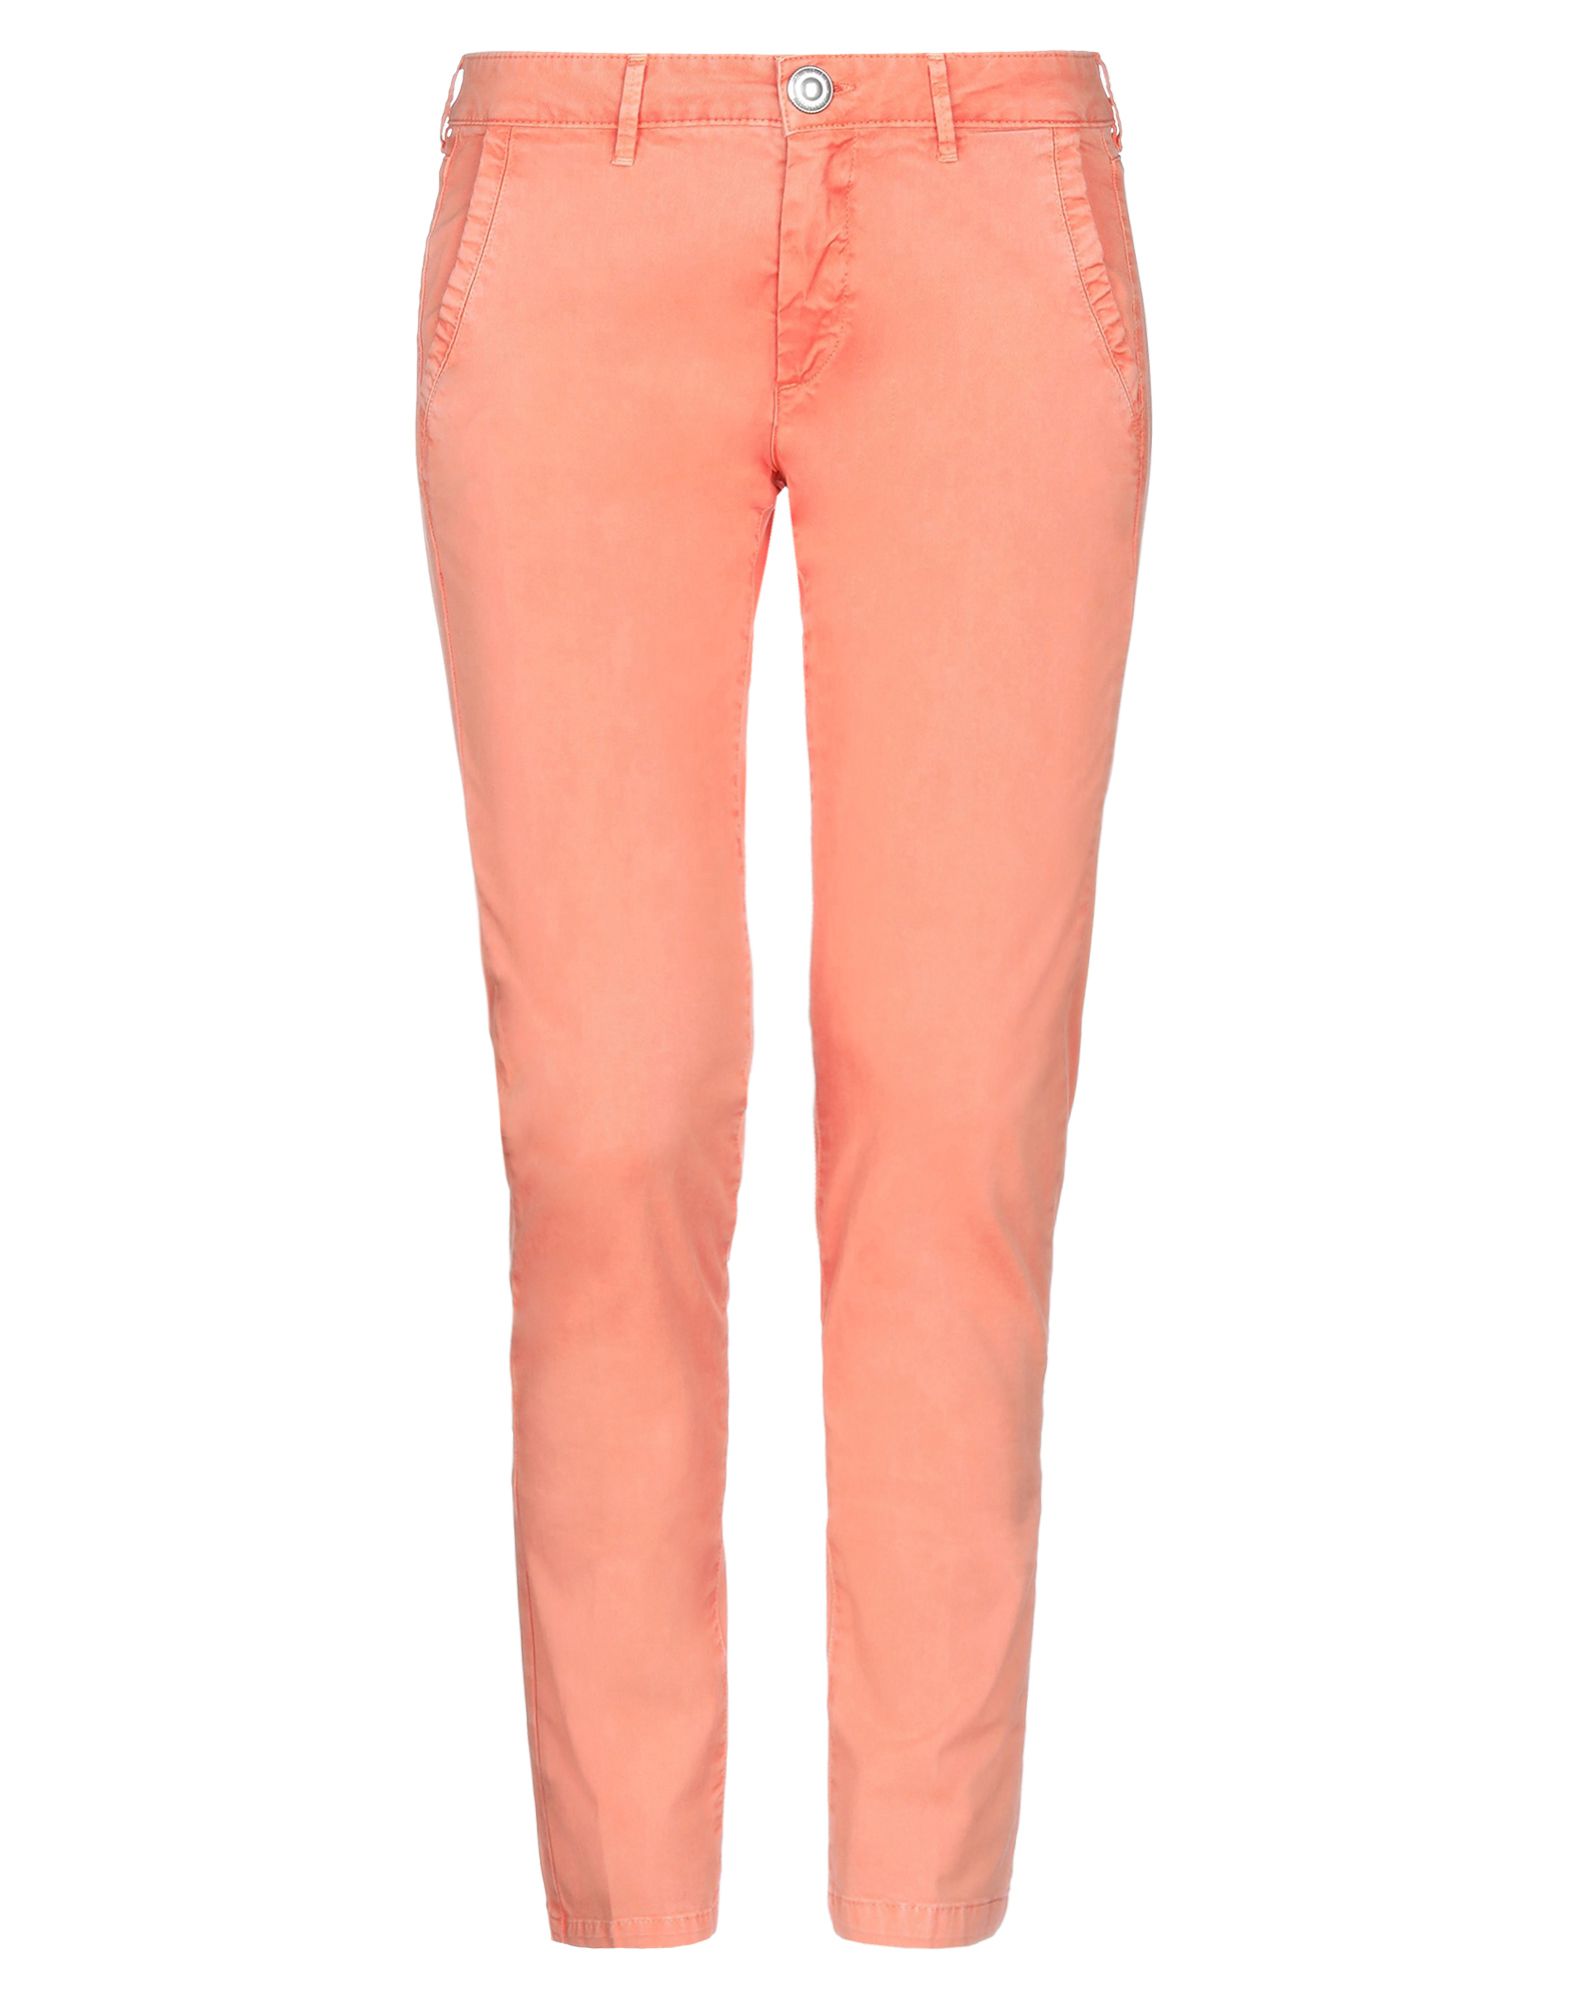 Повседневные брюки  - Лососево-розовый цвет